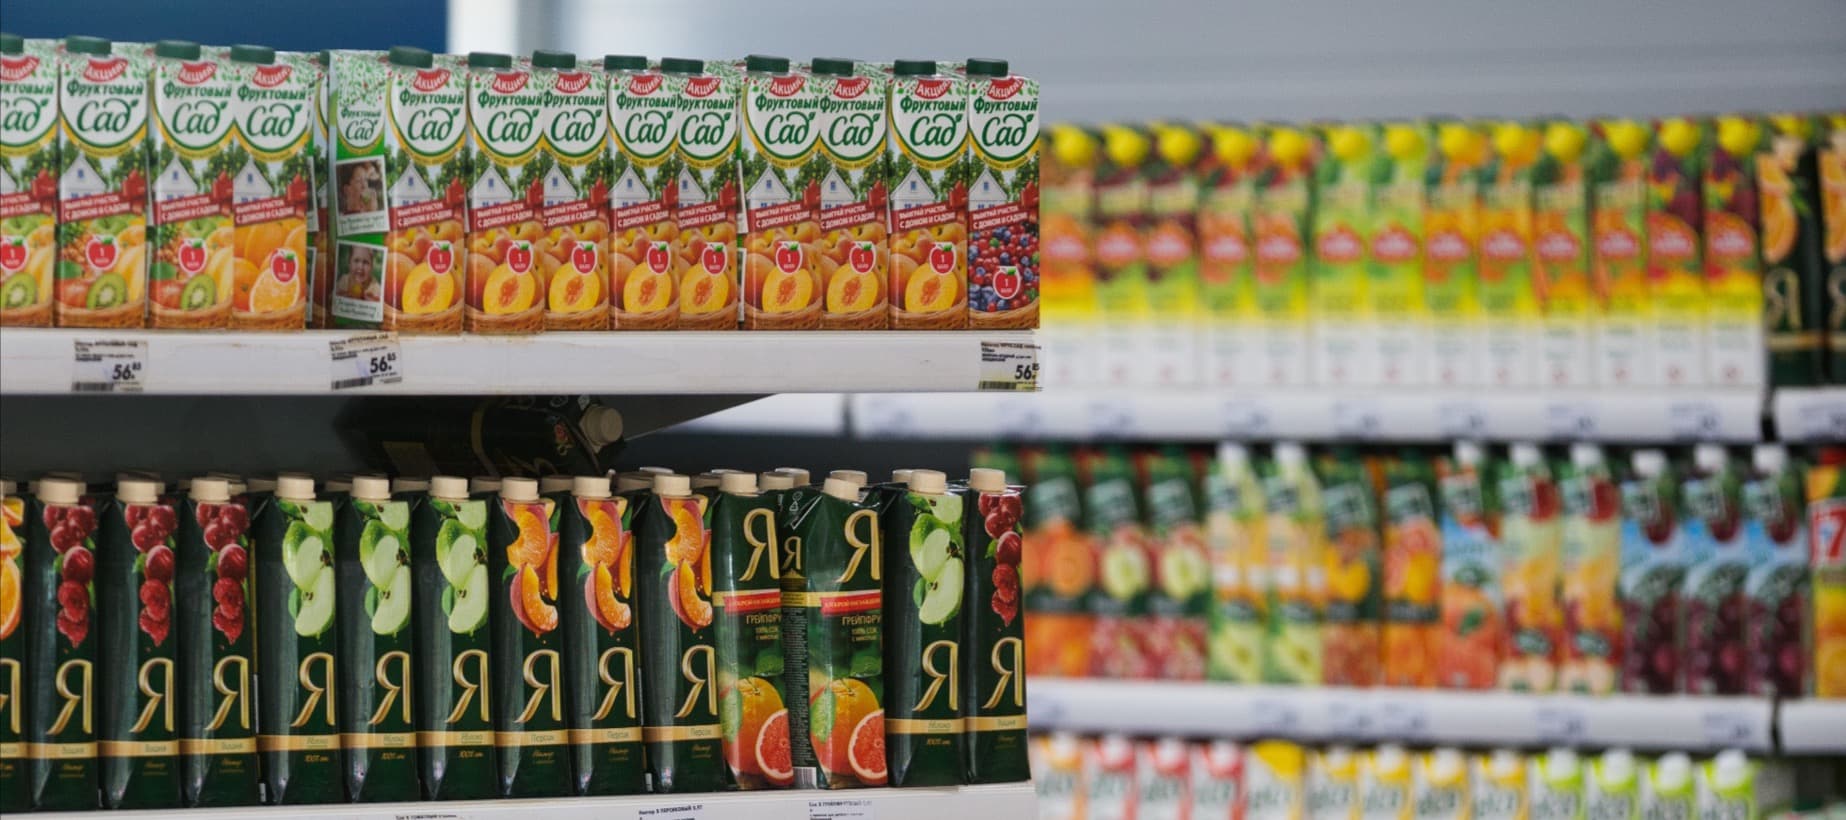 Фото новости: "Производители соков и газировок предупредили торговые сети о подорожании продукции"